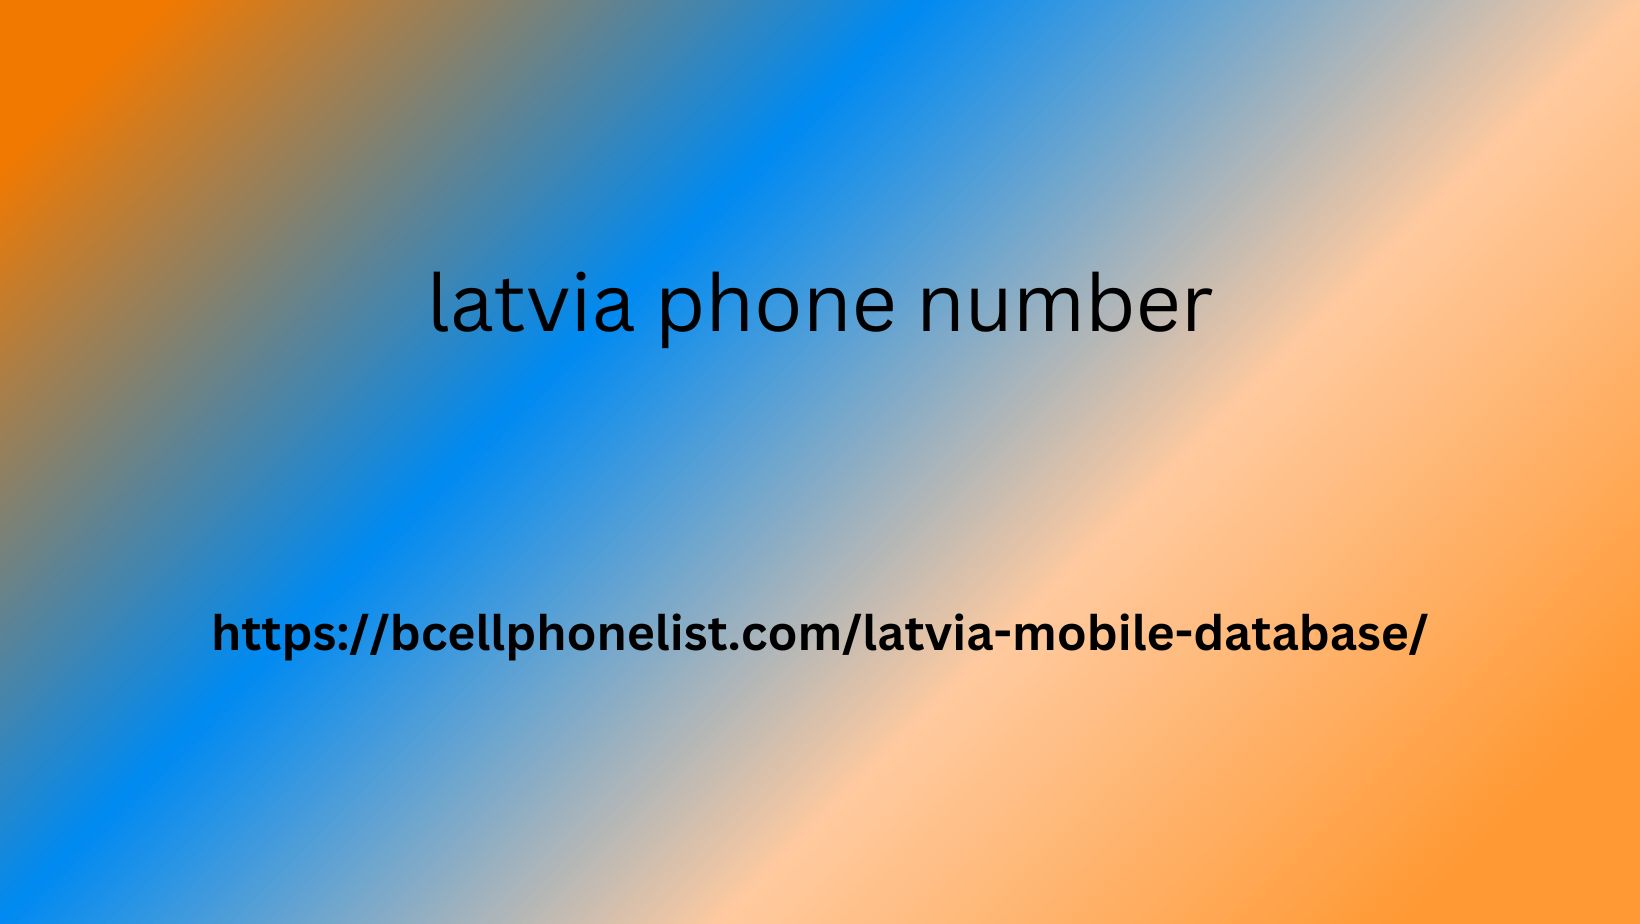 latvia phone number